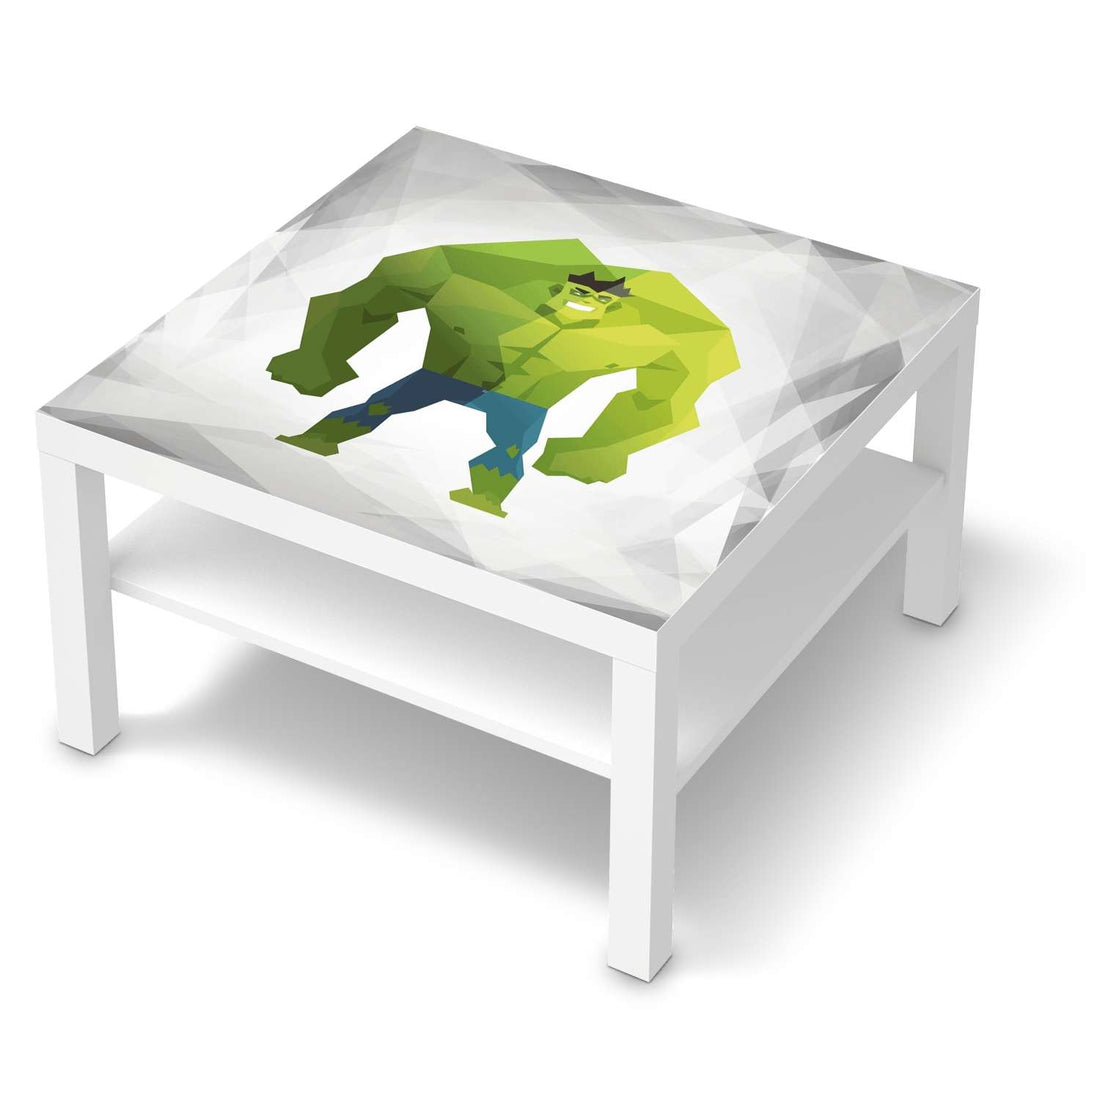 Selbstklebende Folie Mr. Green - IKEA Lack Tisch 78x78 cm - weiss